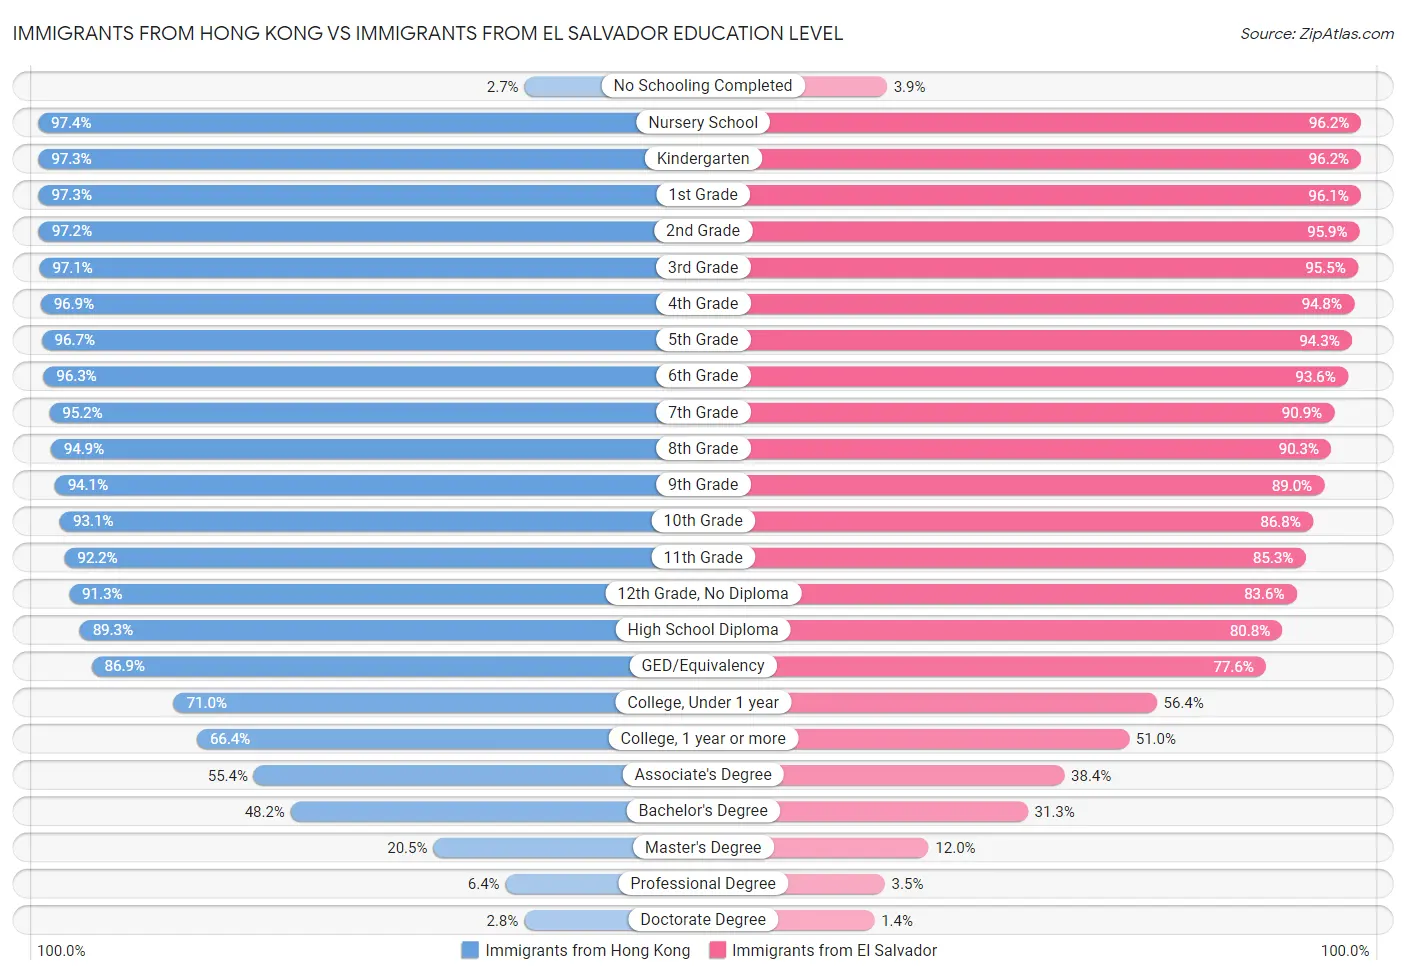 Immigrants from Hong Kong vs Immigrants from El Salvador Education Level